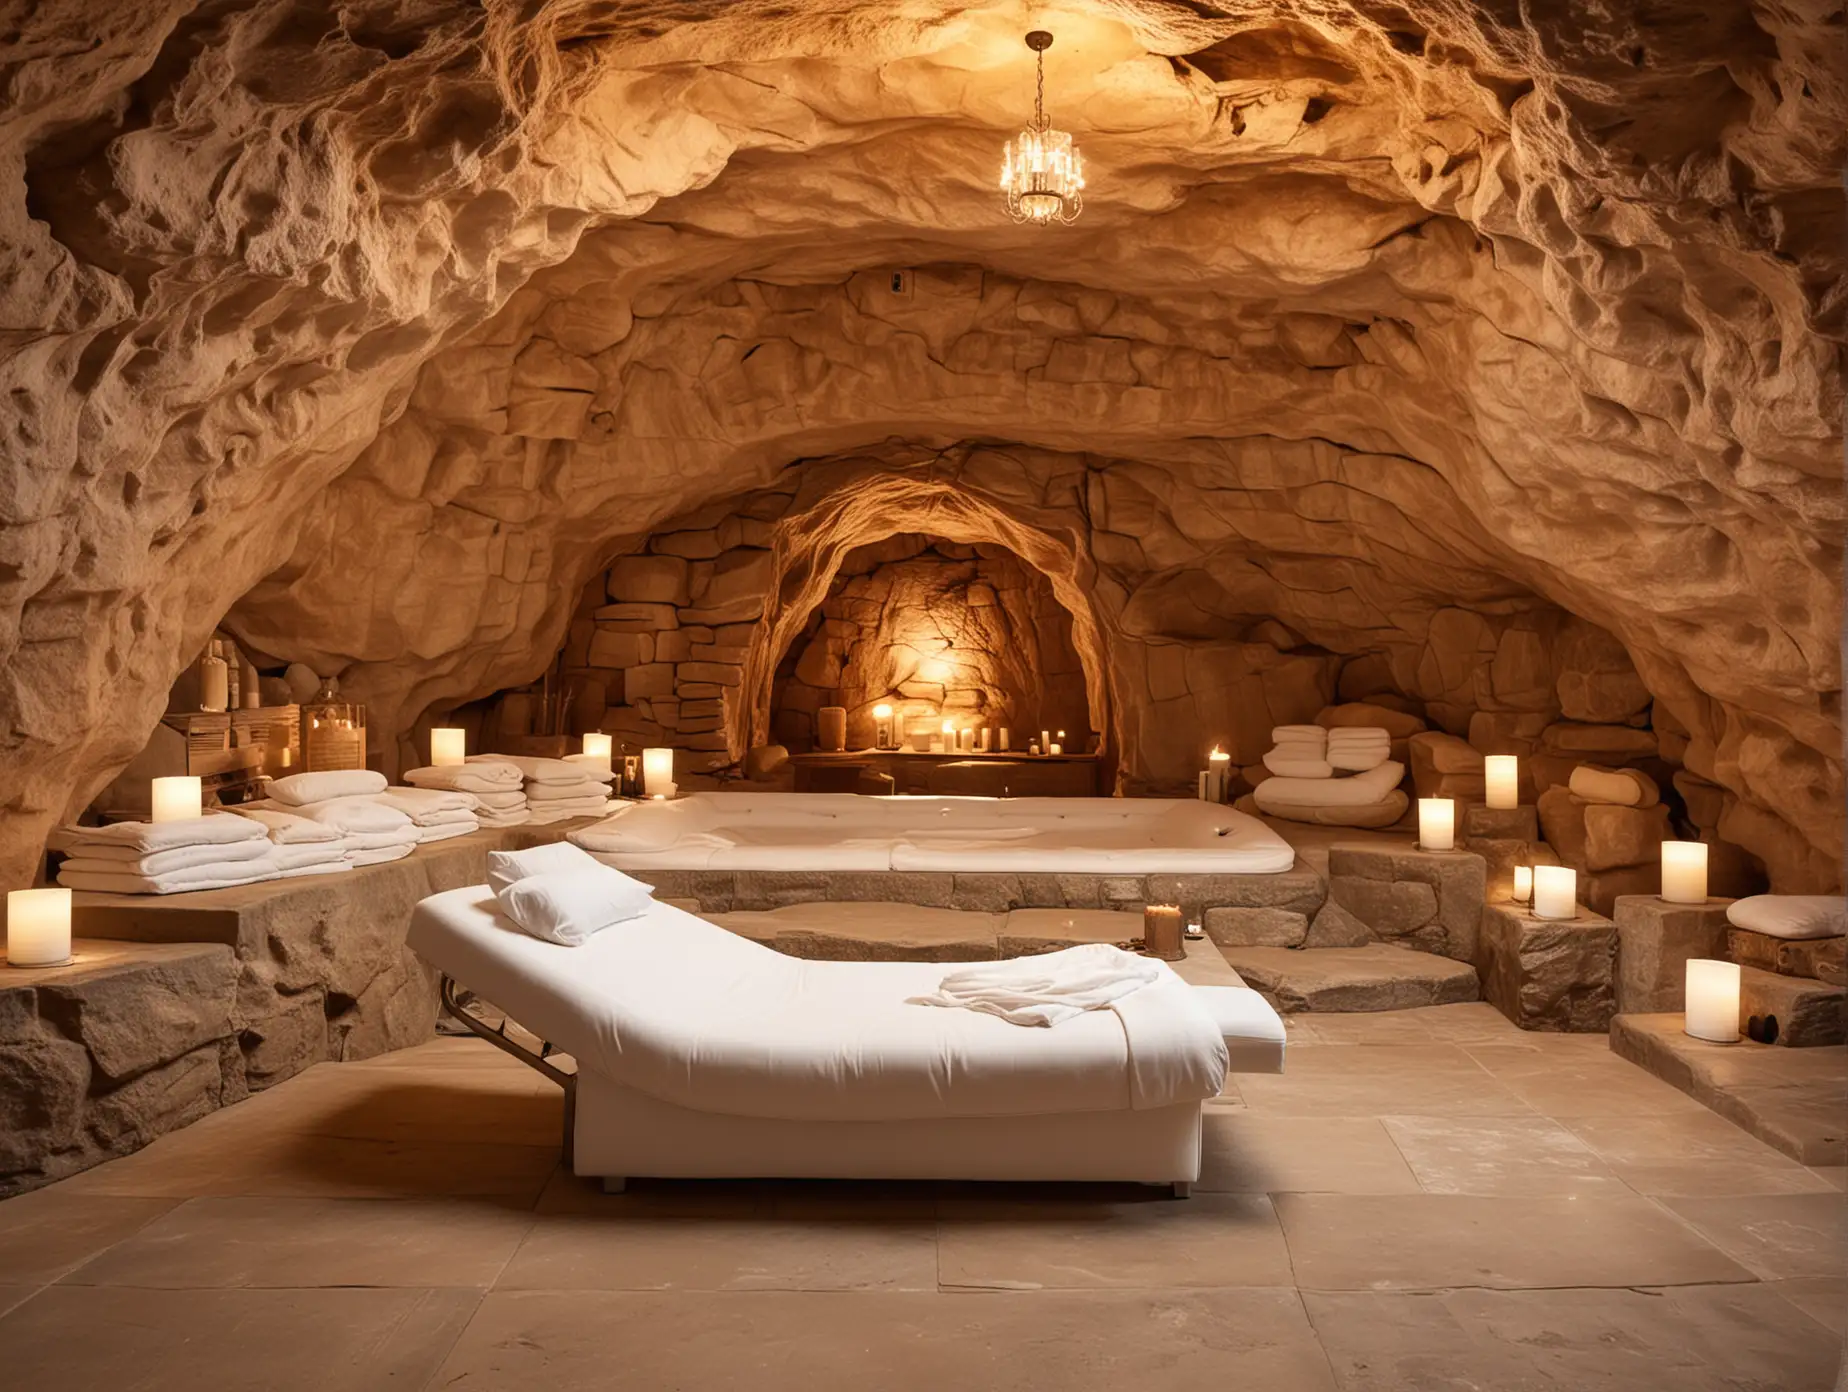 интерьер спа центра похожего на пещеру, на переднем плане лежак с белым матрасом,  мягкий теплый свет